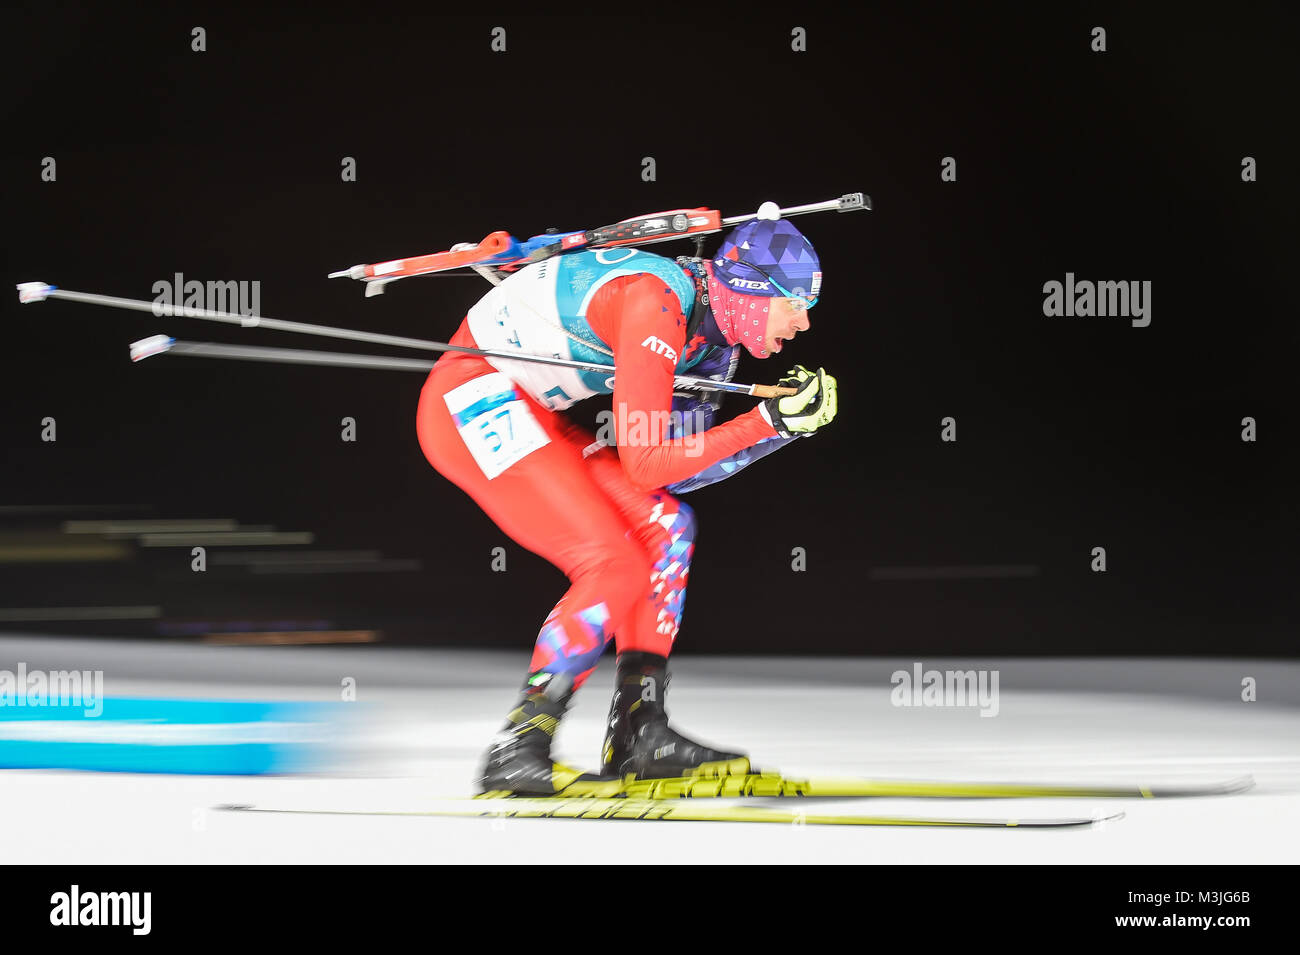 11 février 2018 : Matej Kazar de Slovaquie à Mens 10 km biathlon sprint aux Jeux olympiques au stade de biathlon, Alpensia Pyeongchang, Corée du Sud. Ulrik PedersenCSM Banque D'Images